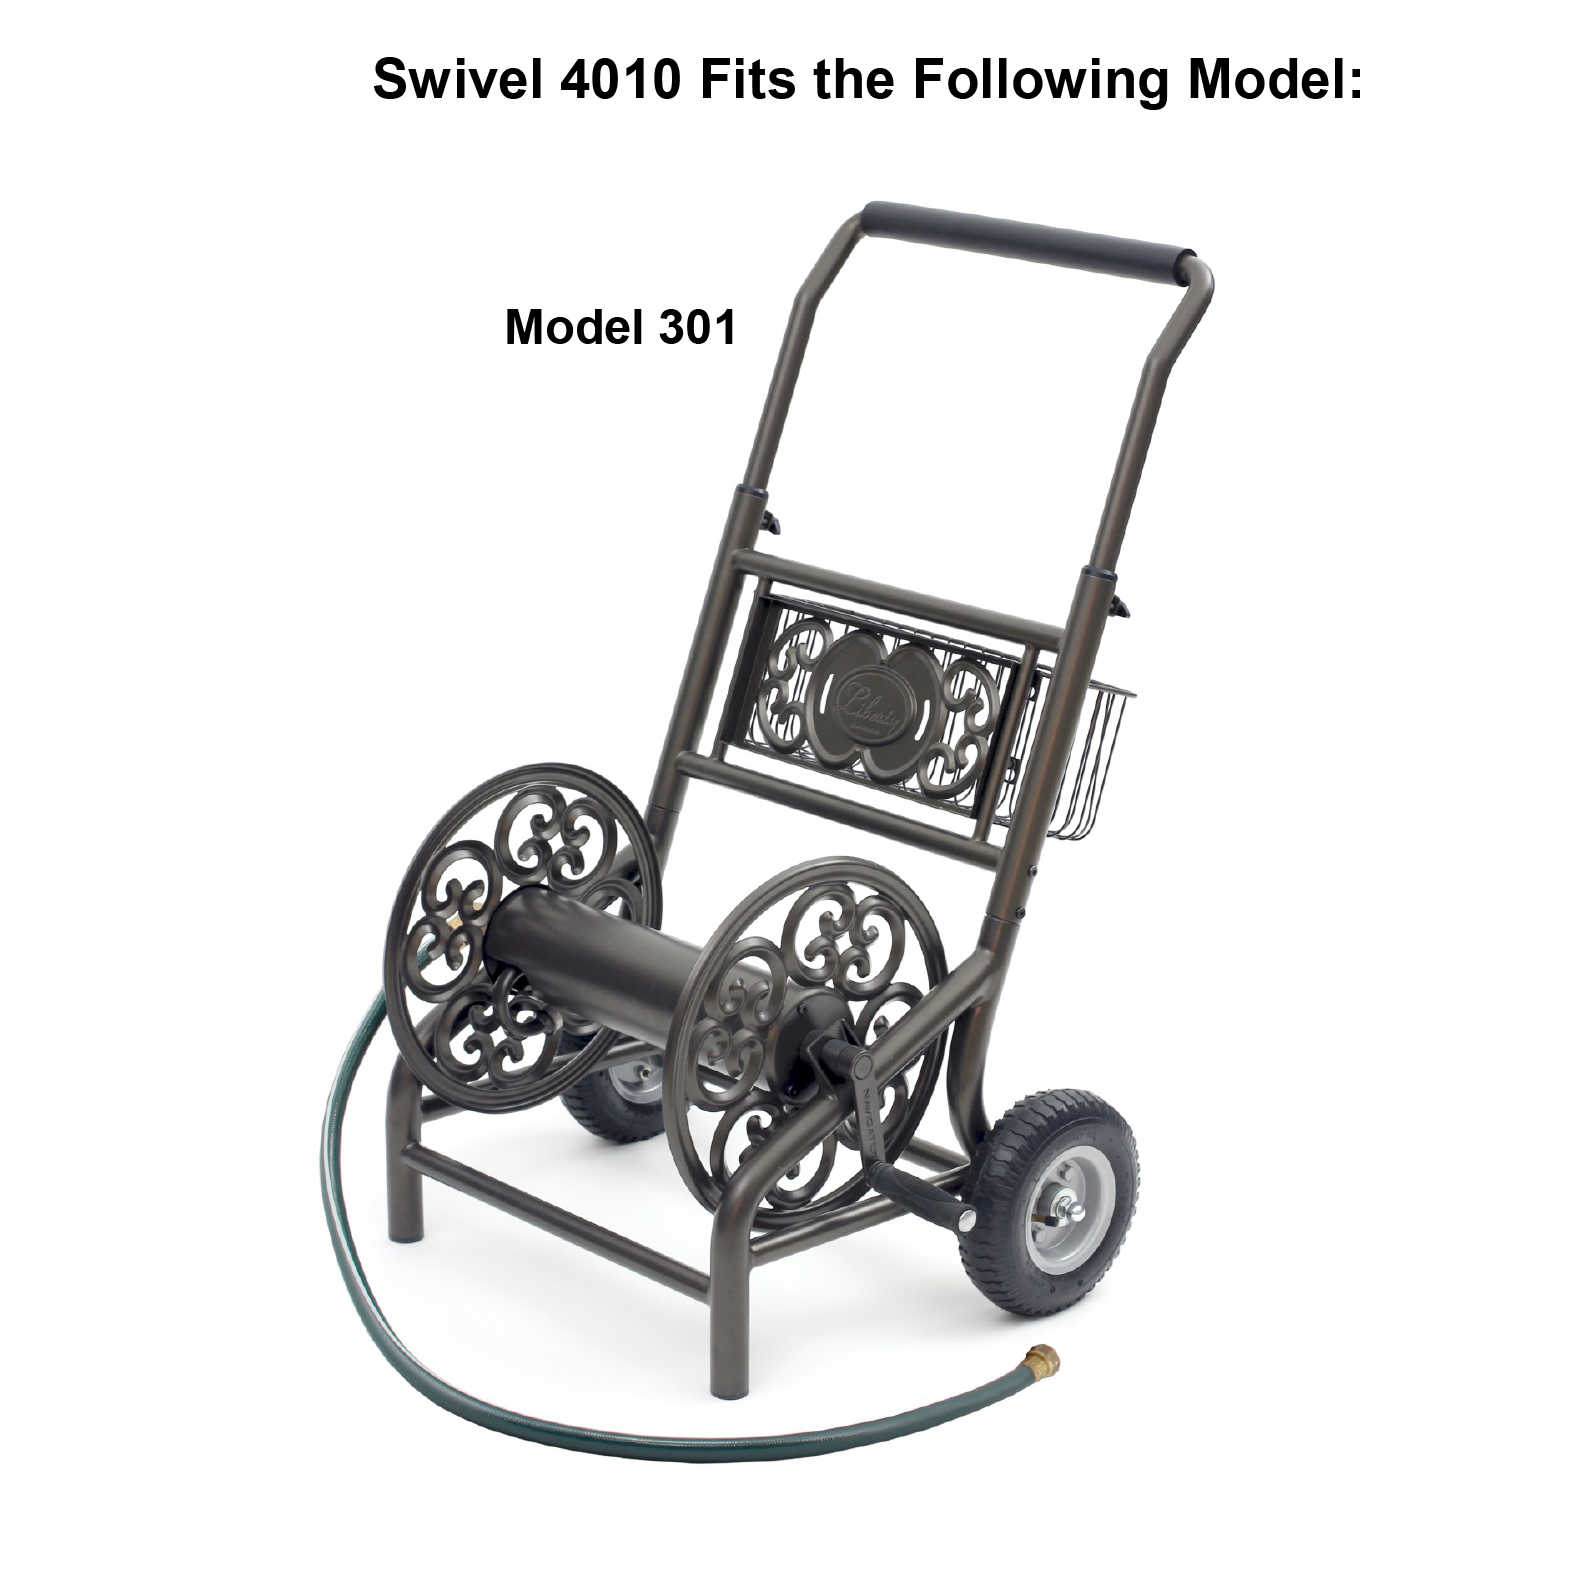 4010 Swivel fits Model 301